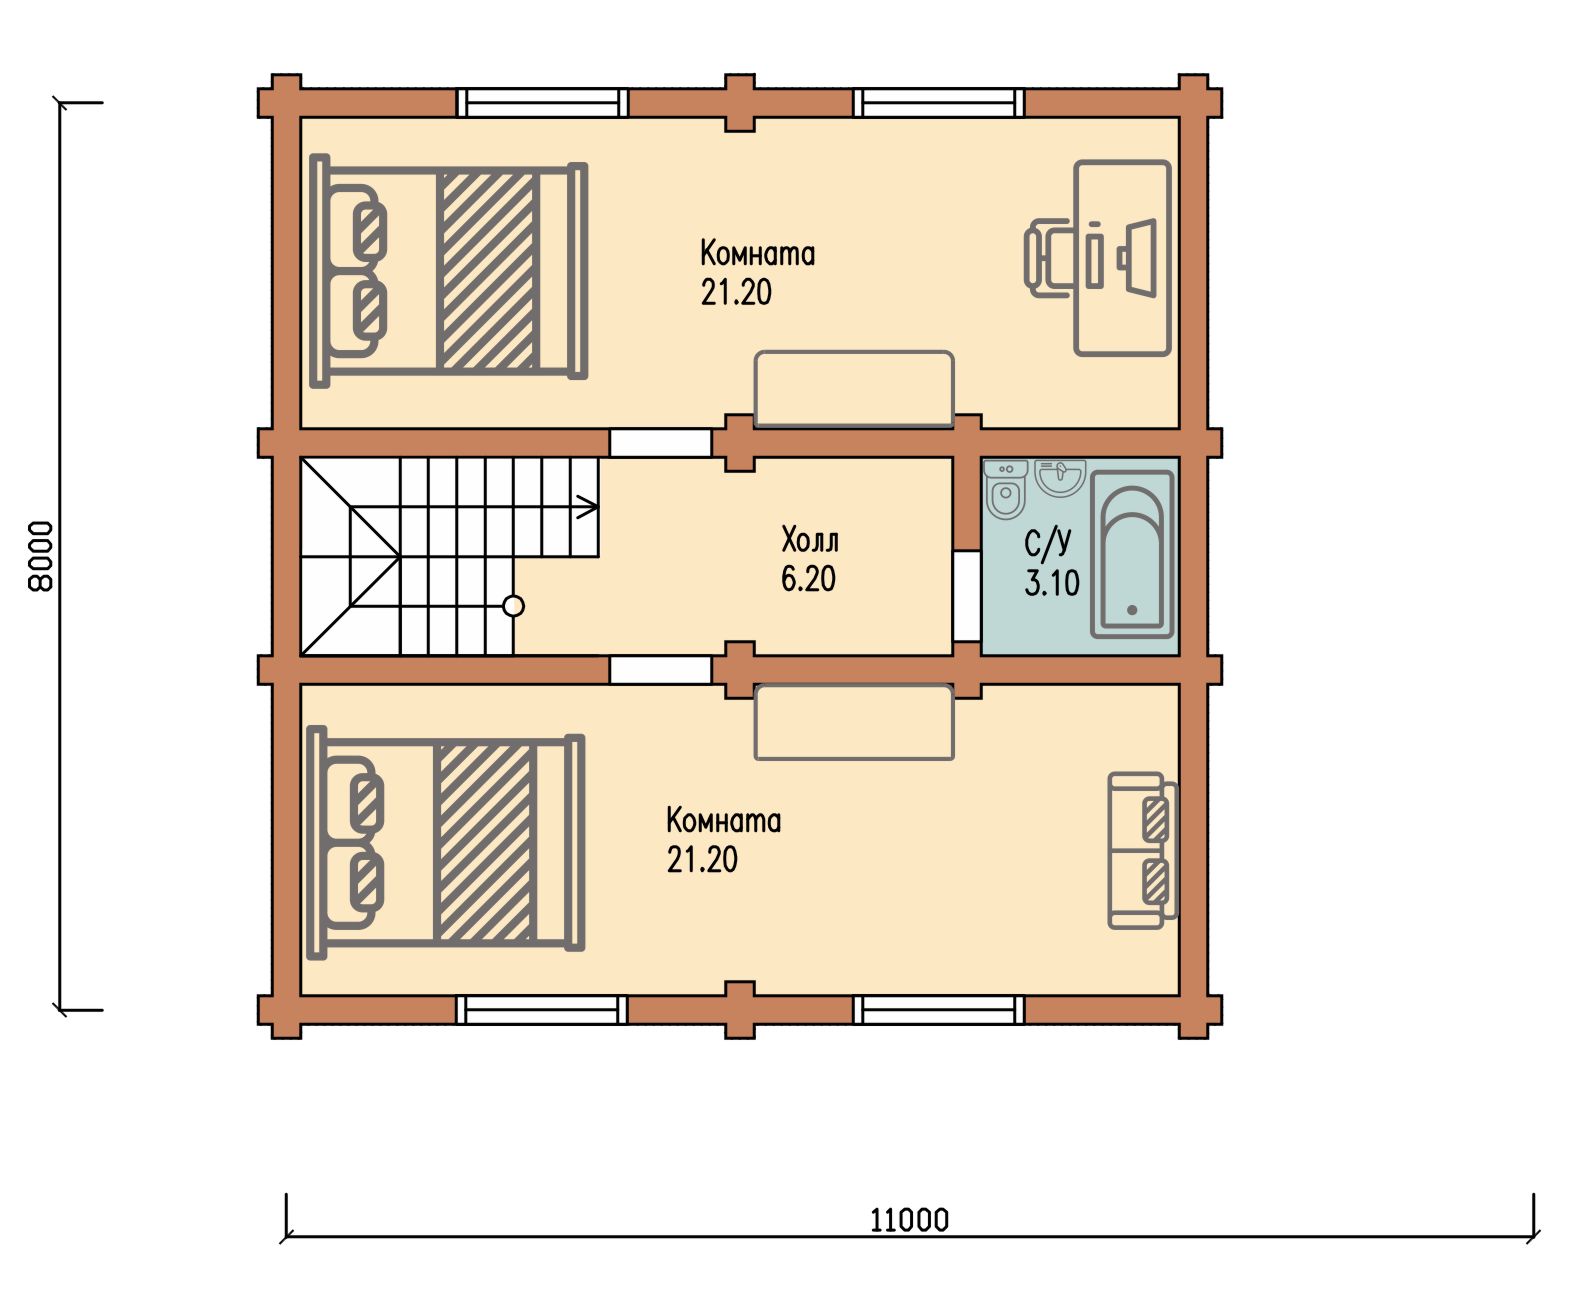 Проект одноэтажного деревянного  дома с мансардой и террасой  из бруса — ДБС 305